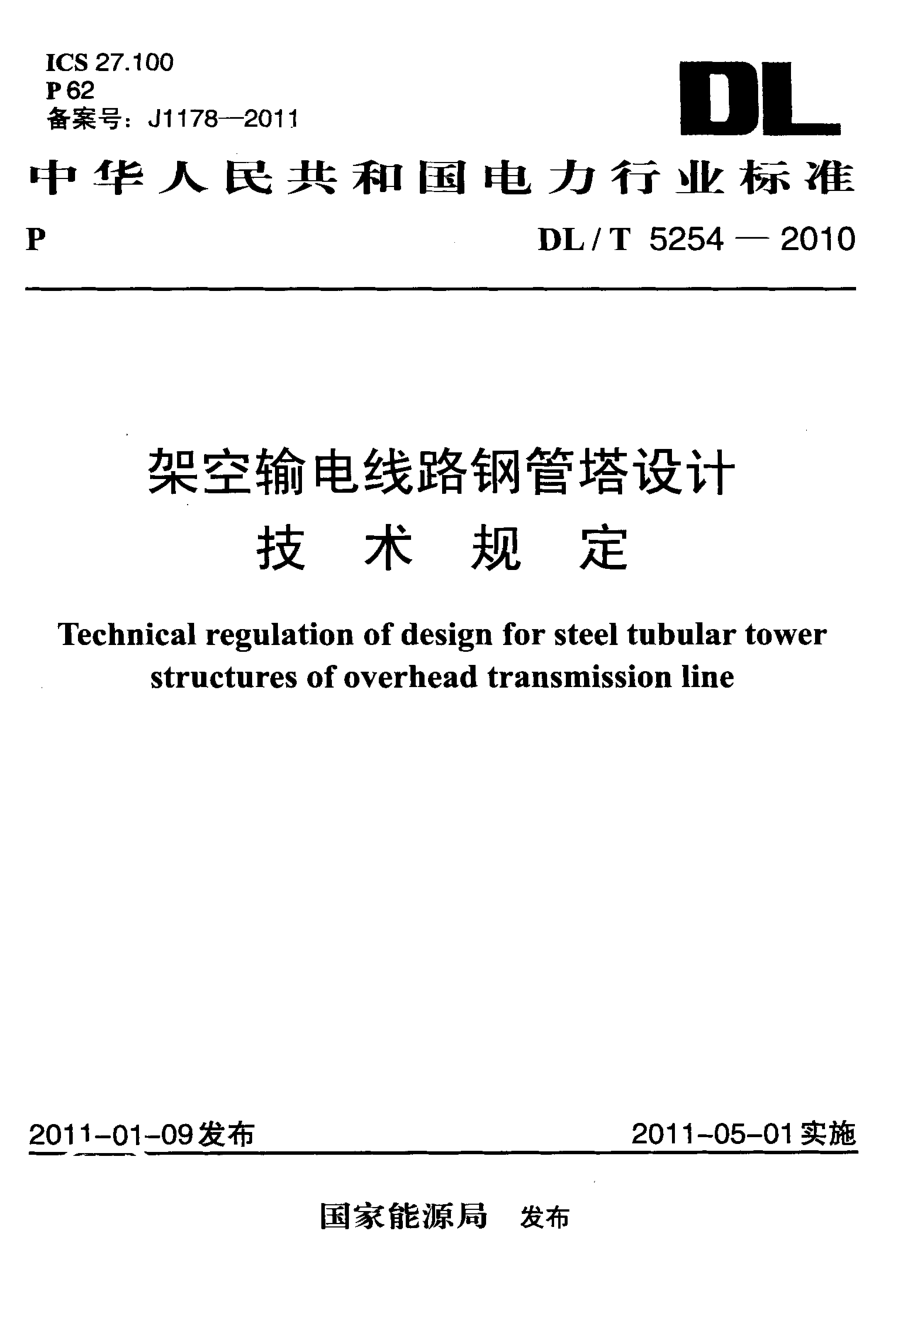 架空输电线路钢管塔设计技术规定.pdf